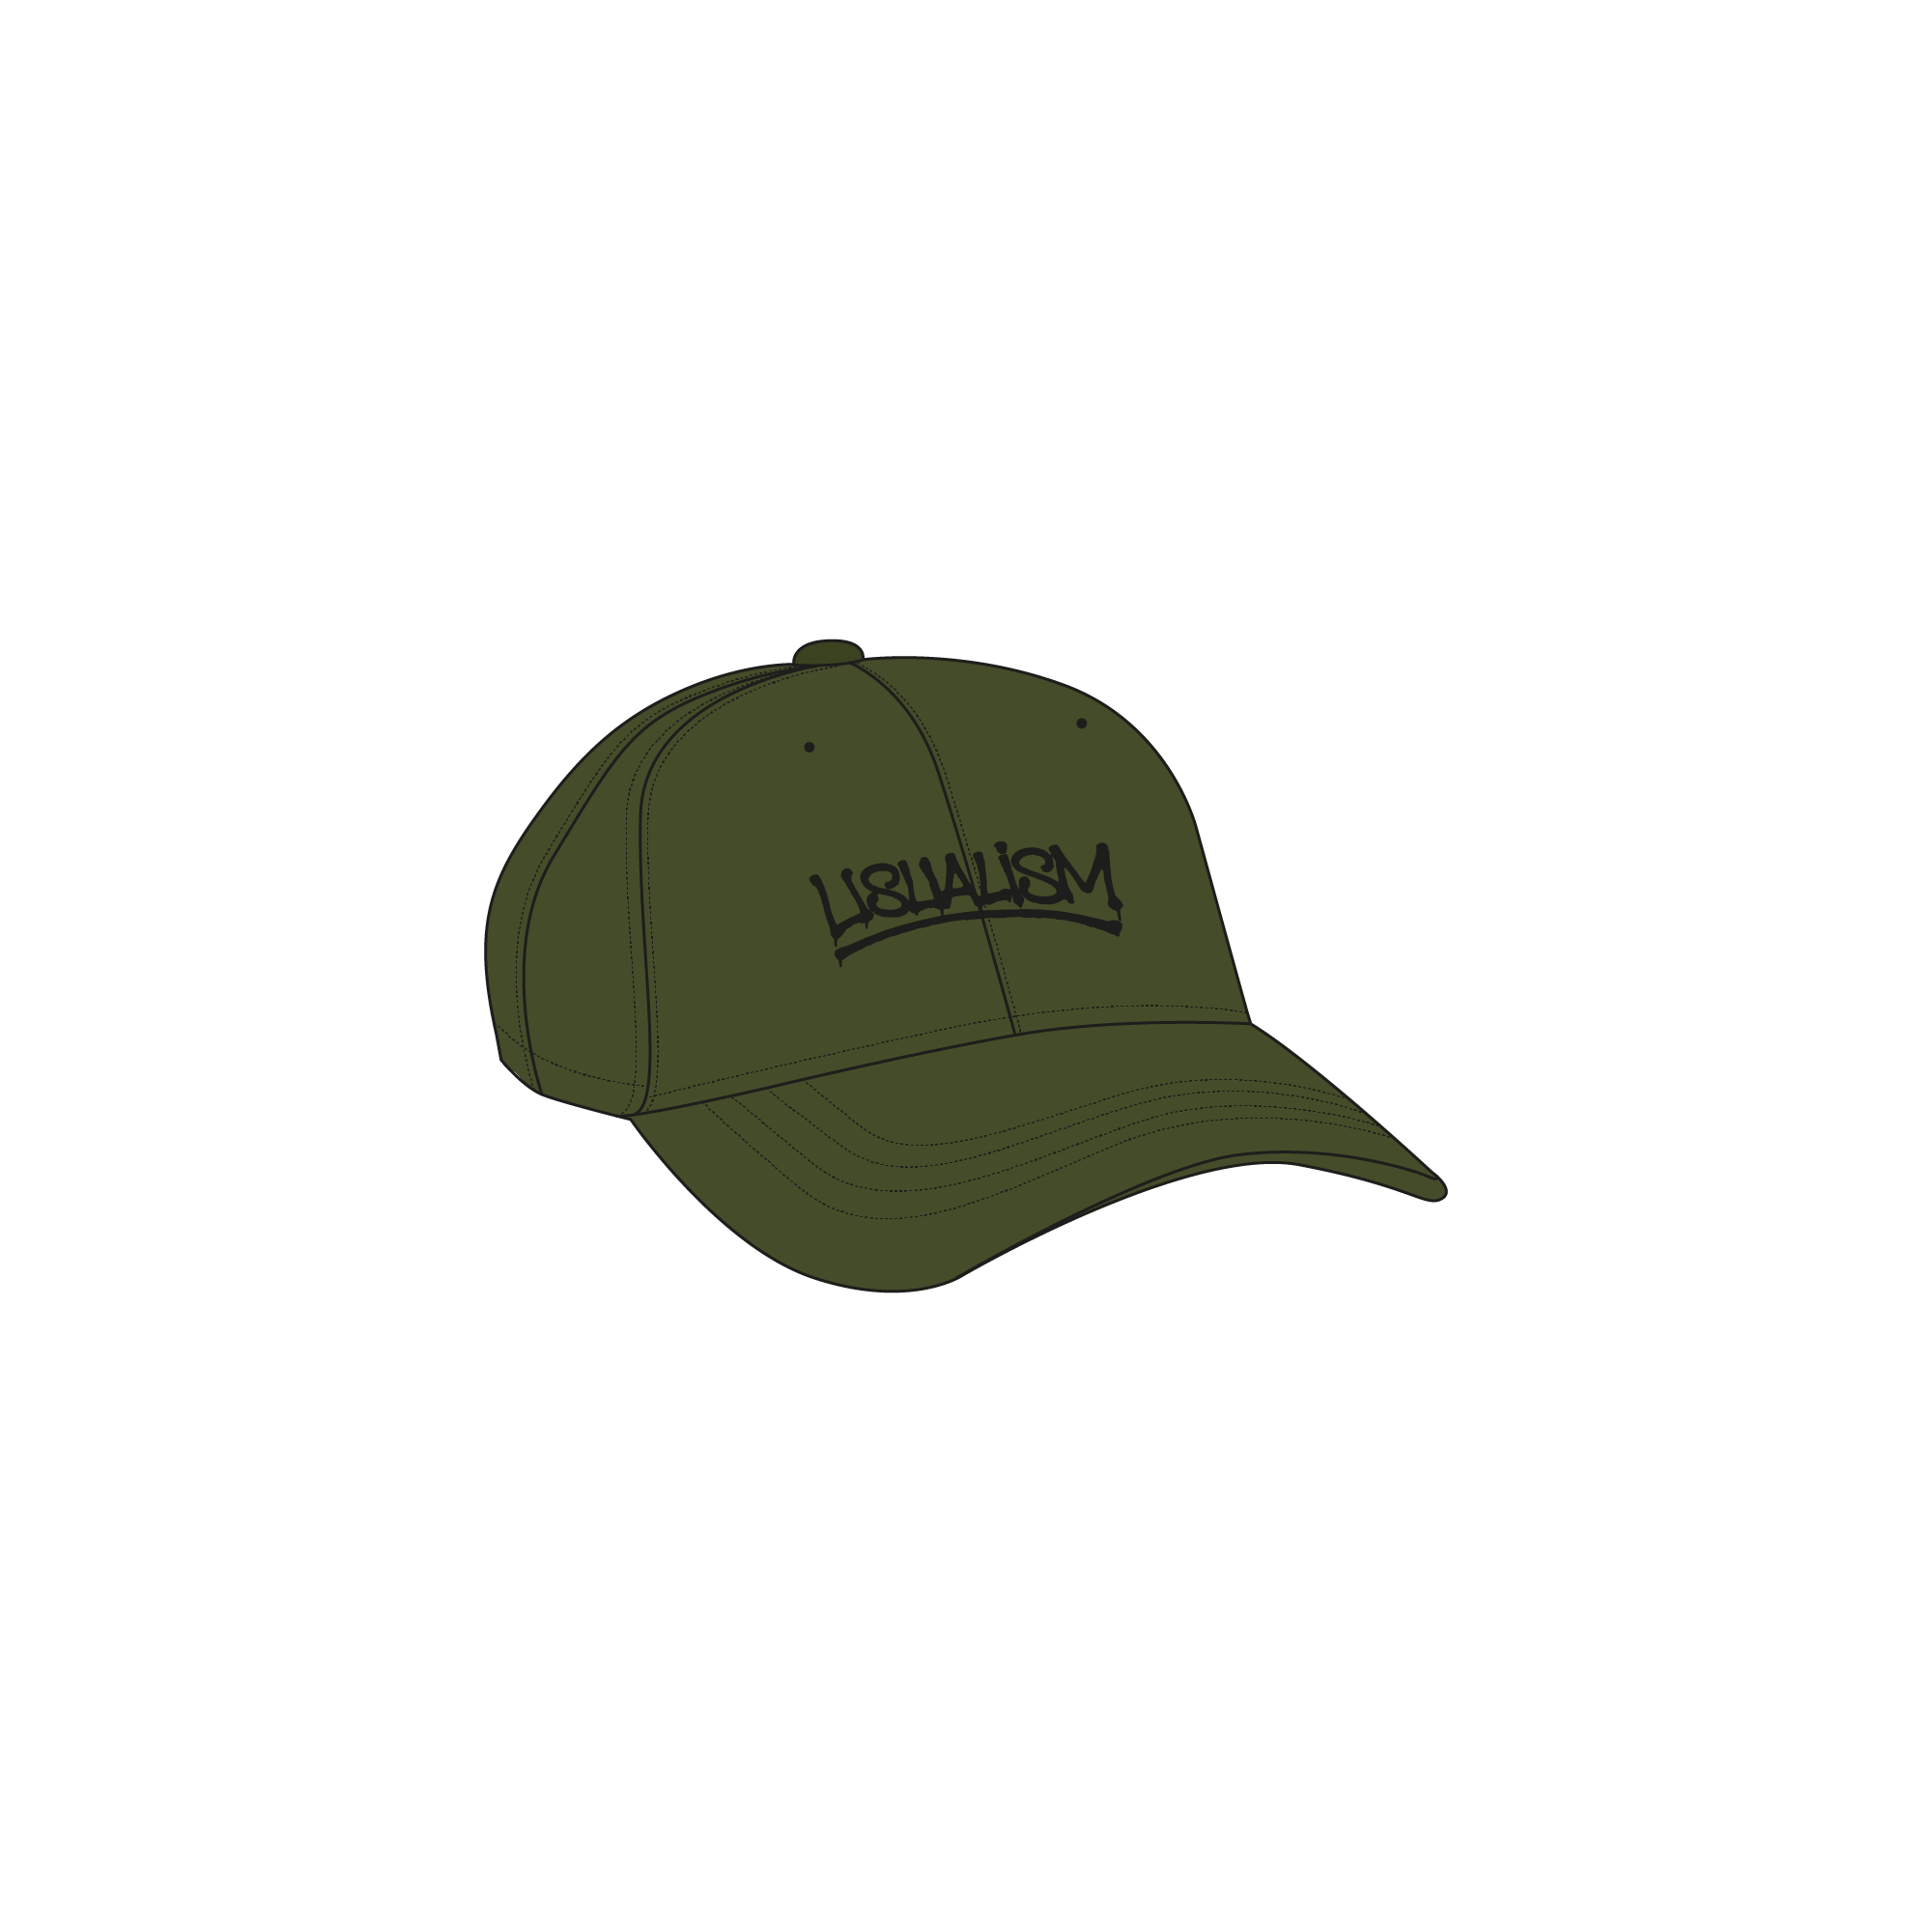 USUALISM CAP